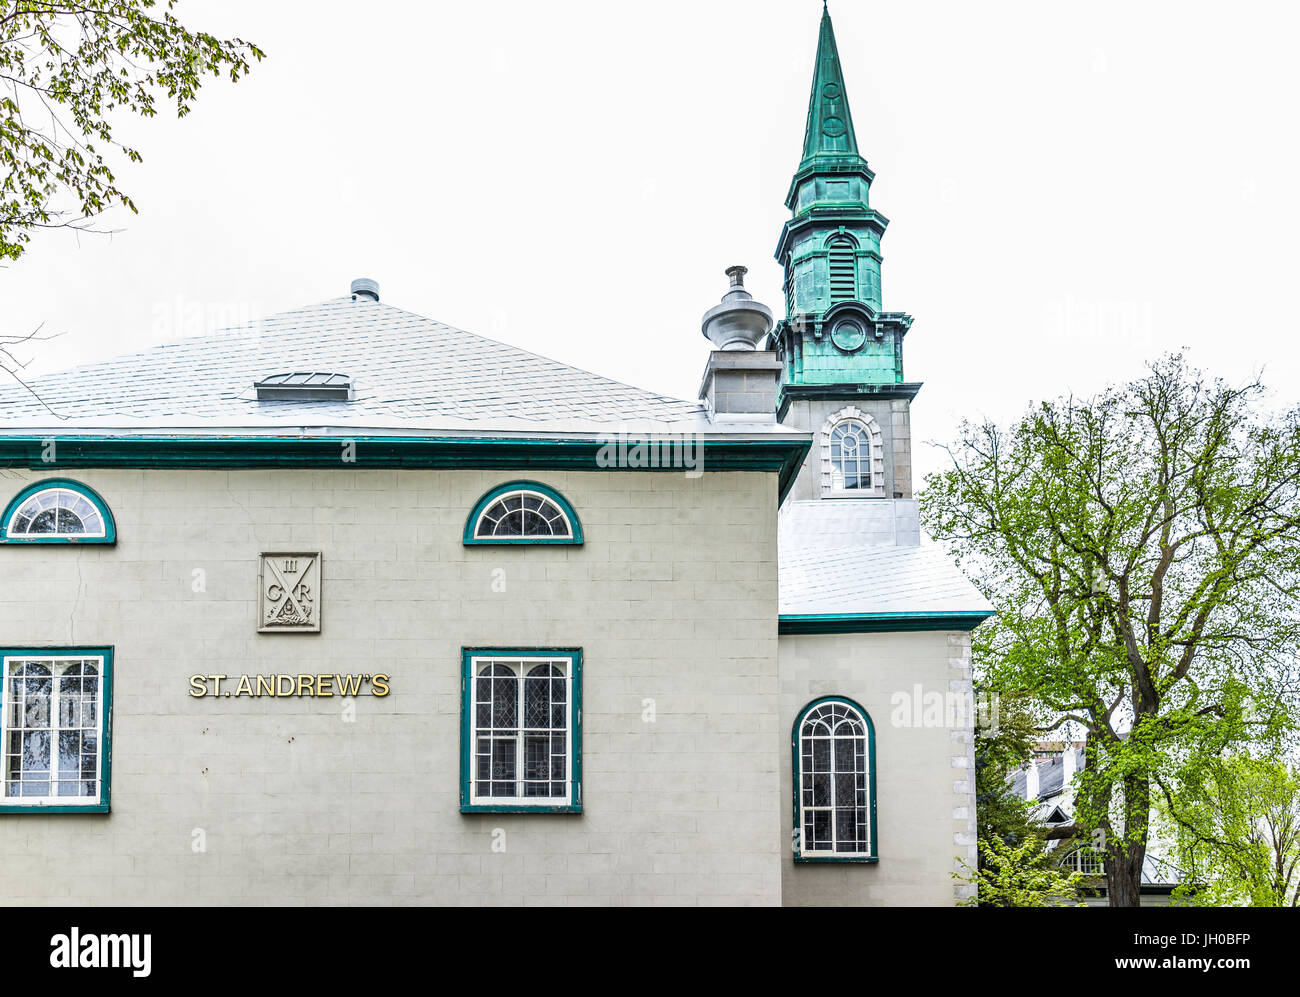 La ville de Québec, Canada - 29 mai 2017 : vieille ville avec Saint Andrew's church building et signer Banque D'Images